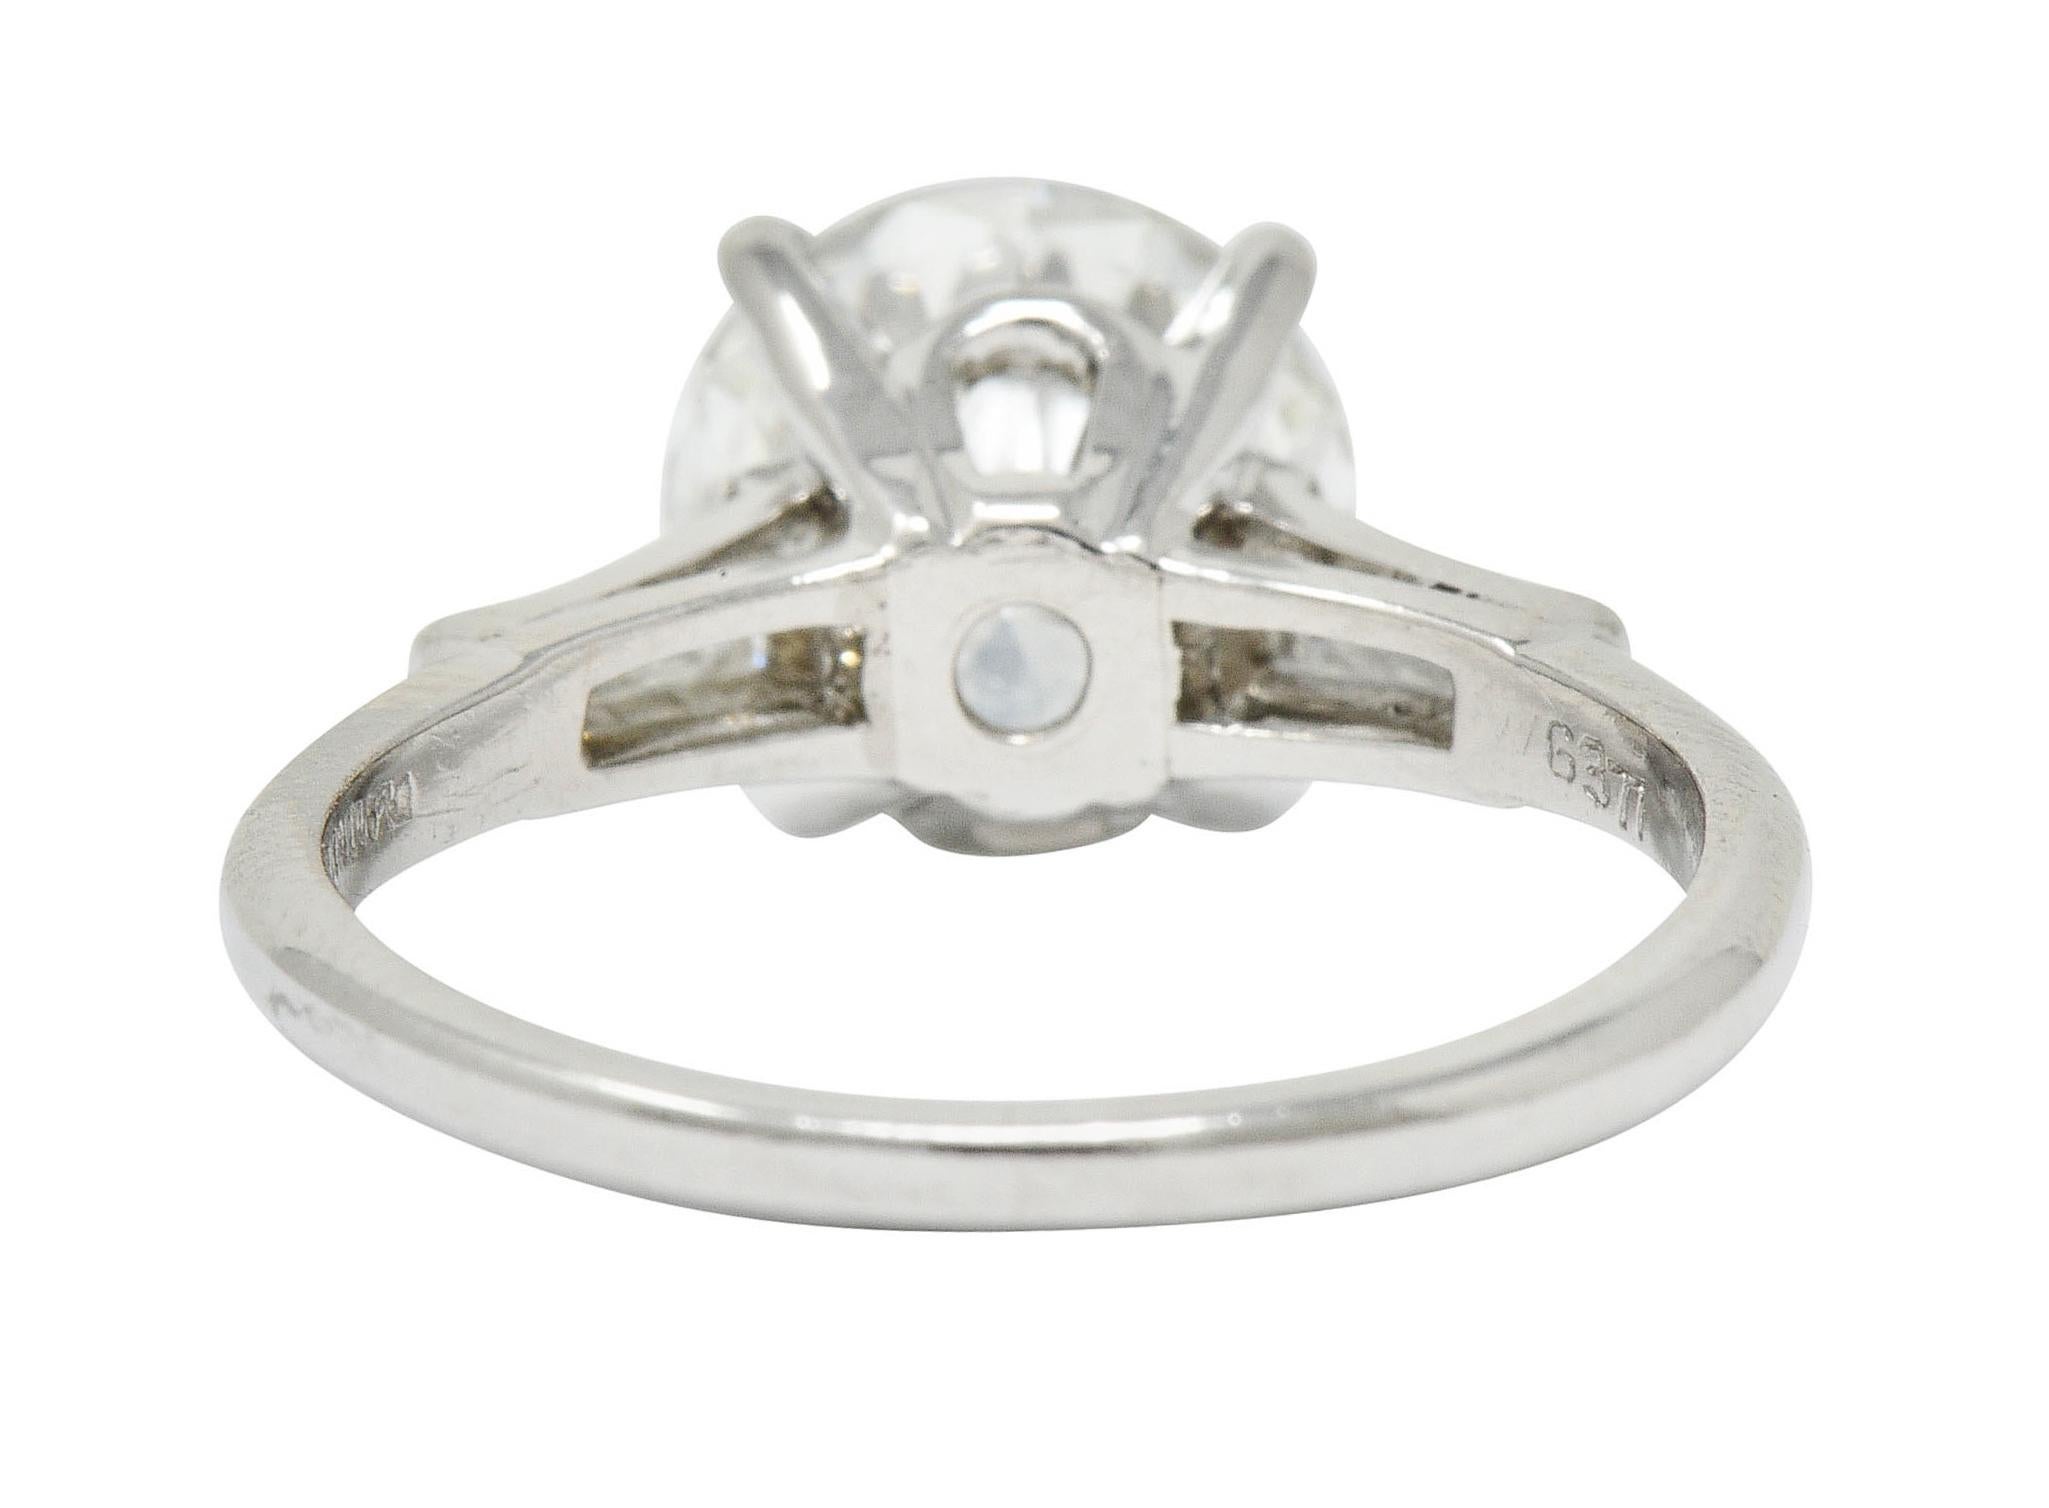 Brilliant Cut 1950s Midcentury 2.62 Carat Diamond Platinum Engagement Ring GIA